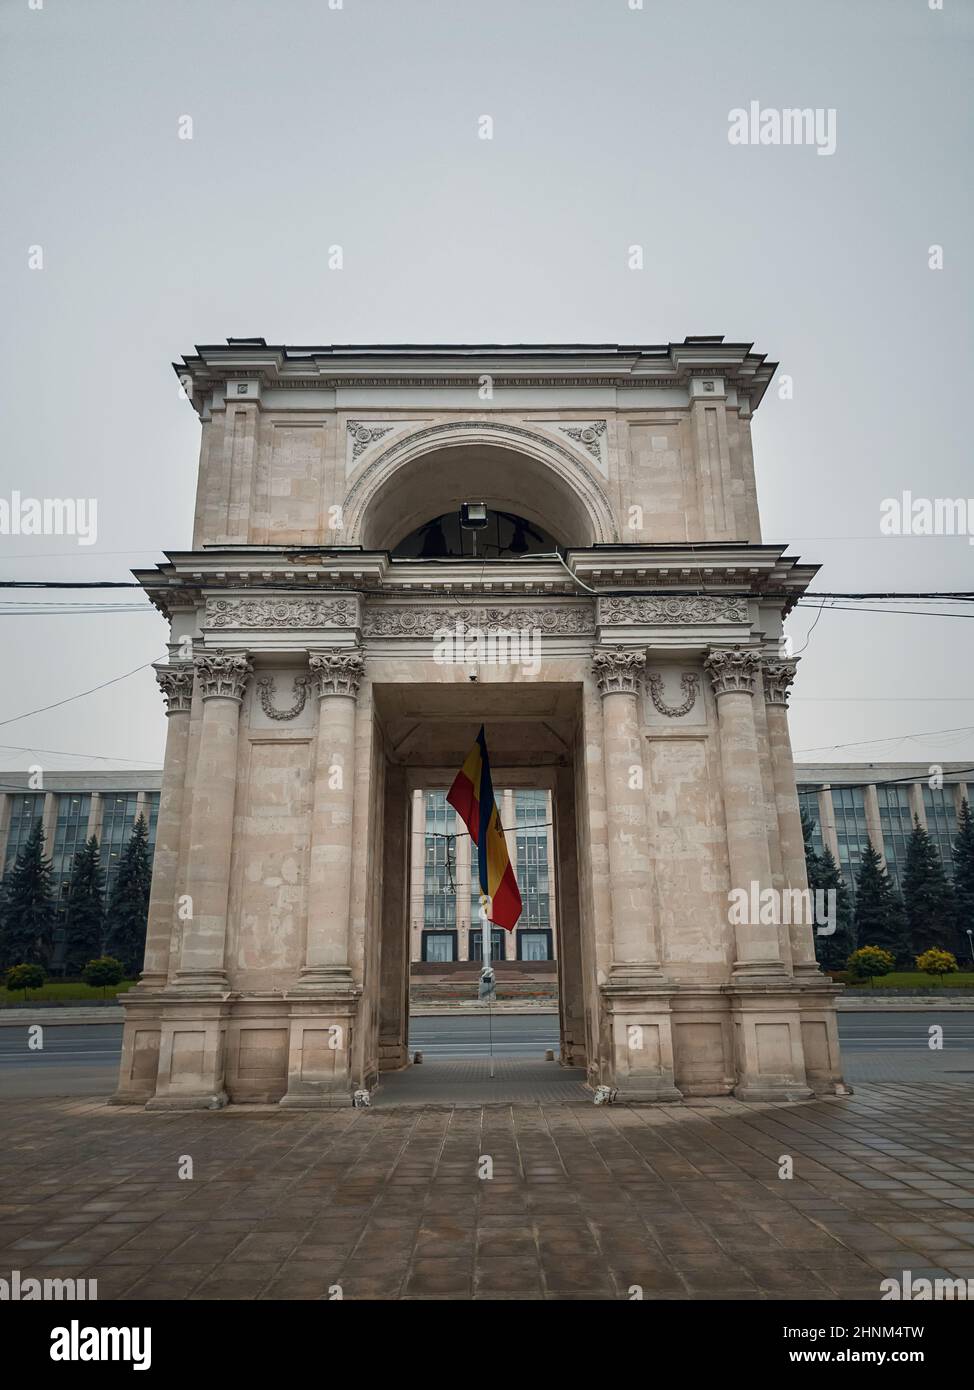 Vista ravvicinata dell'Arco di Trionfo di fronte all'edificio governativo, Chisinau, Moldavia. Monumenti storici della capitale Foto Stock